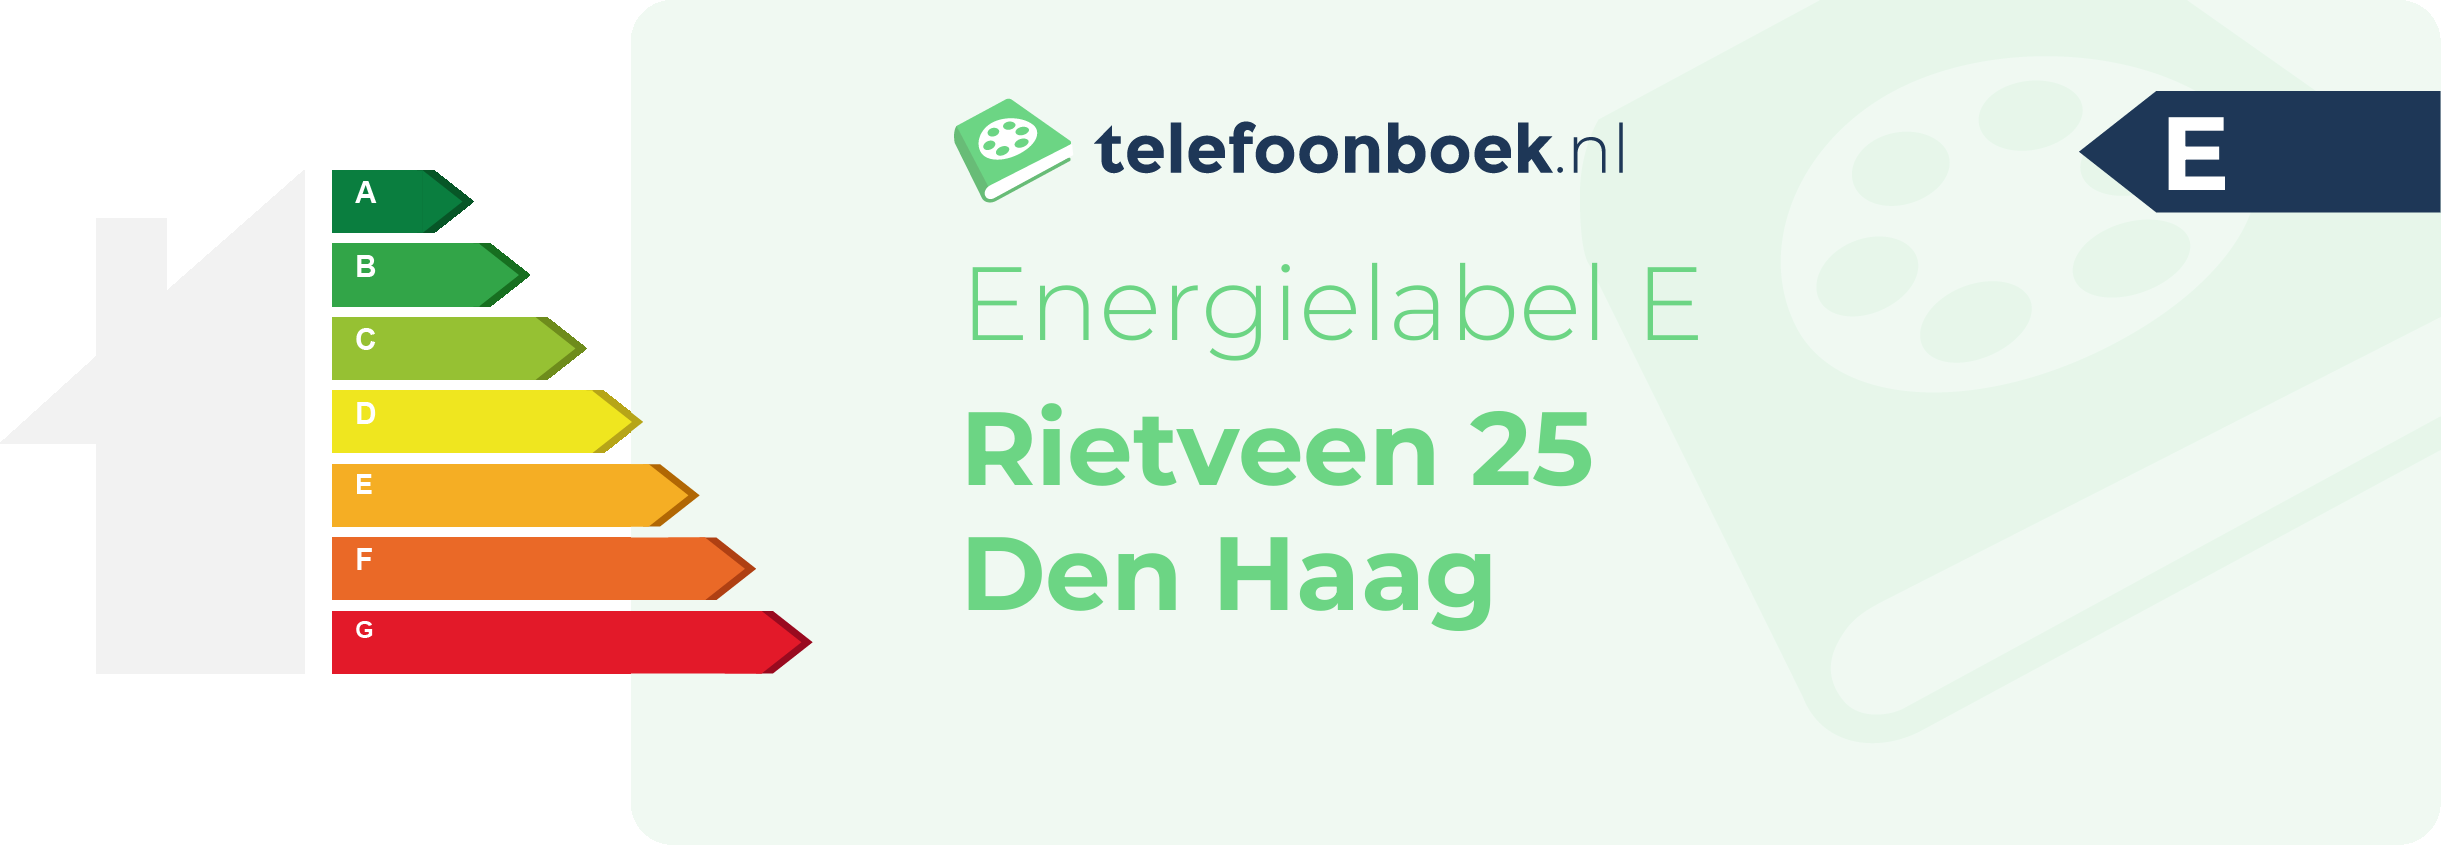 Energielabel Rietveen 25 Den Haag